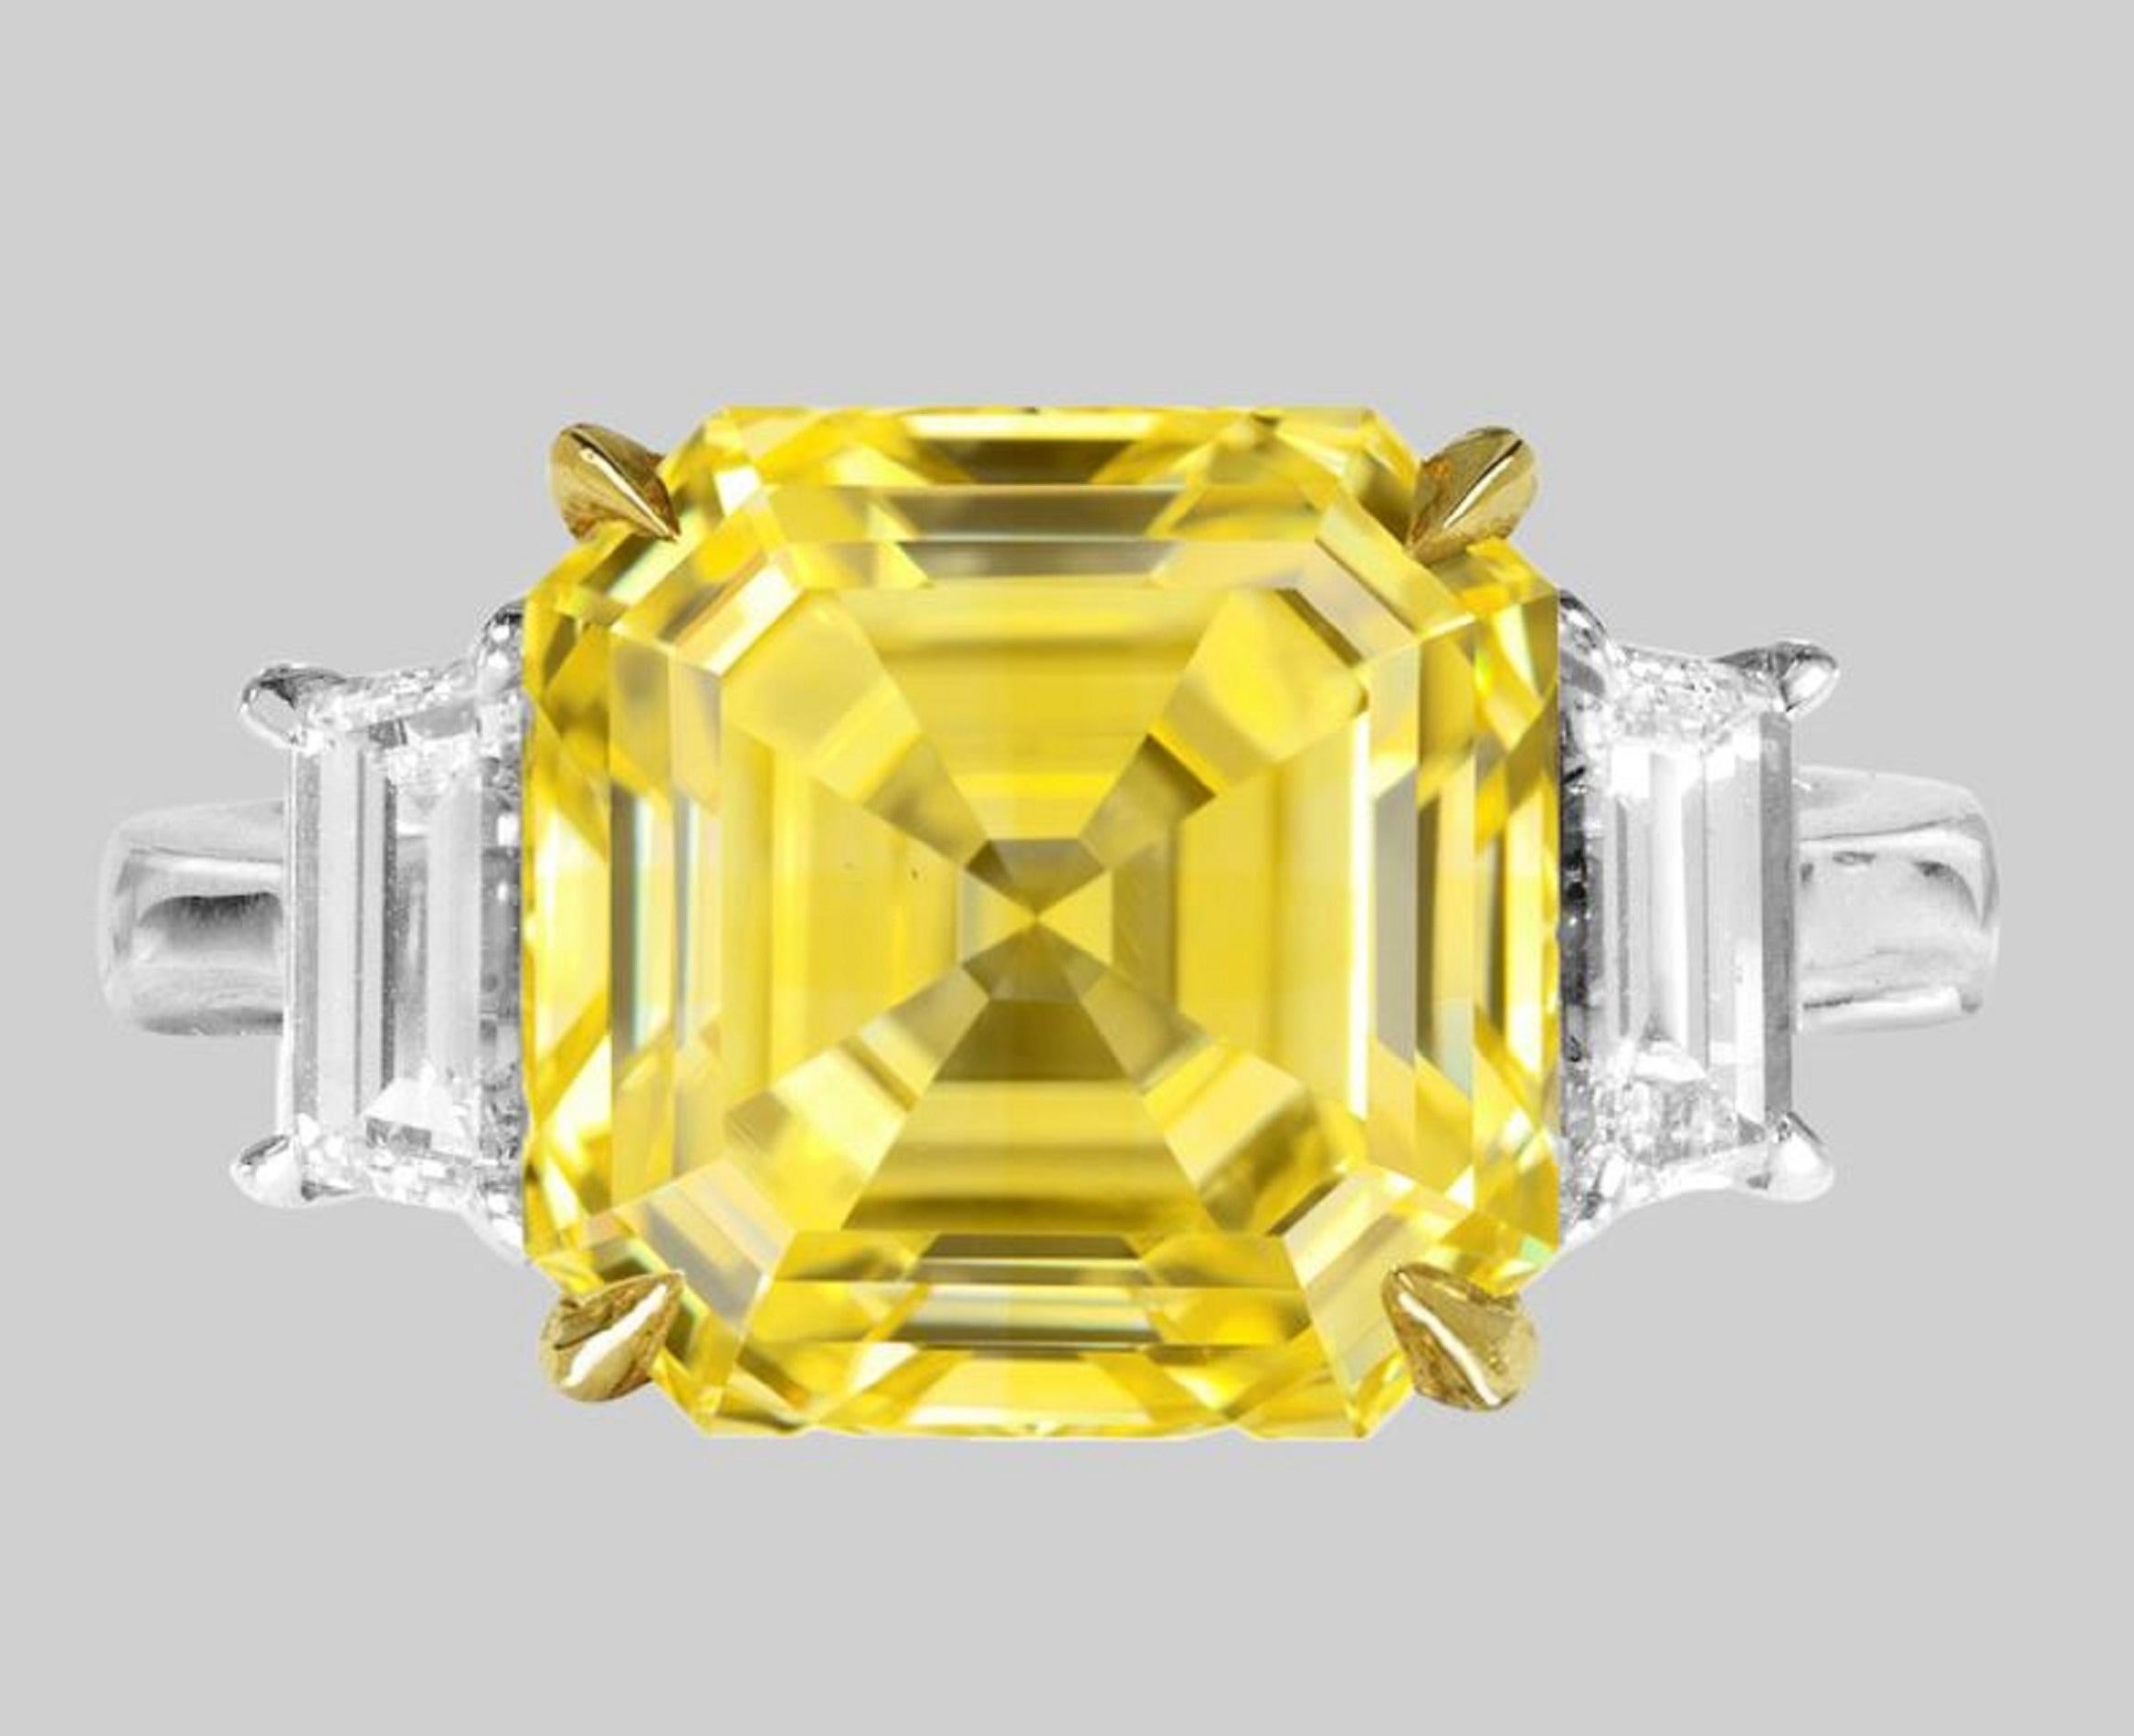 Im Mittelpunkt dieses exquisiten Rings steht ein prächtiger Diamant im Asscher-Schliff von 3.50 Karat, ein wahres Meisterwerk an Design und Handwerkskunst. Der vom Gemological Institute of America (GIA) zertifizierte Diamant hat eine Fancy VIVID